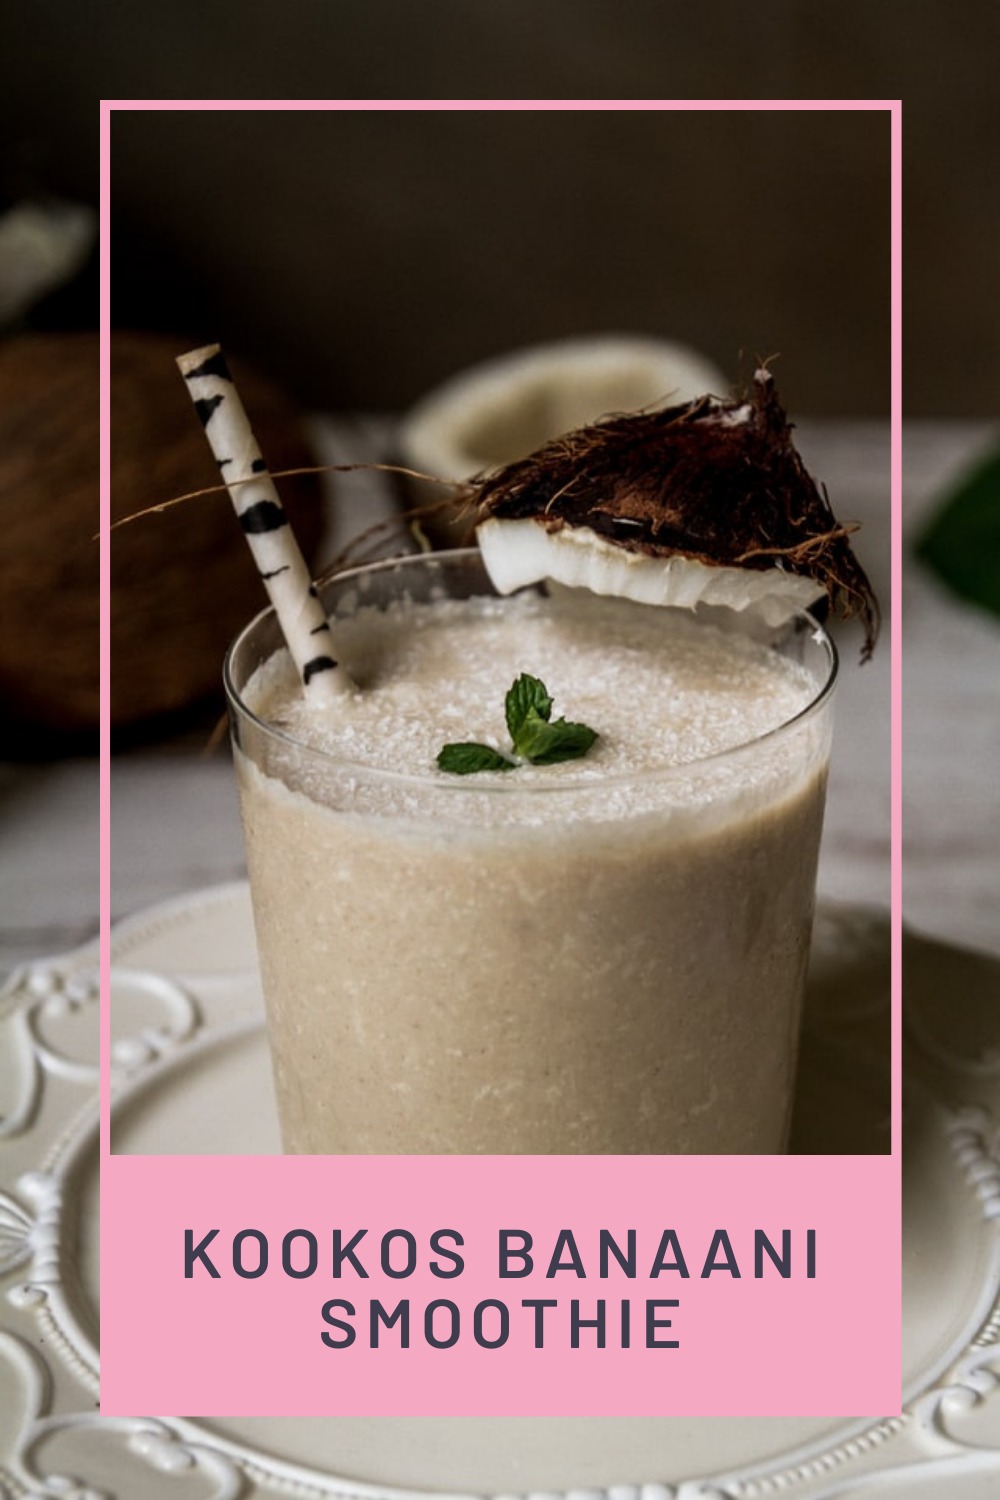 Kookos banaani smoothie - Kokeile tätä reseptiä aamupahoinvointiin!